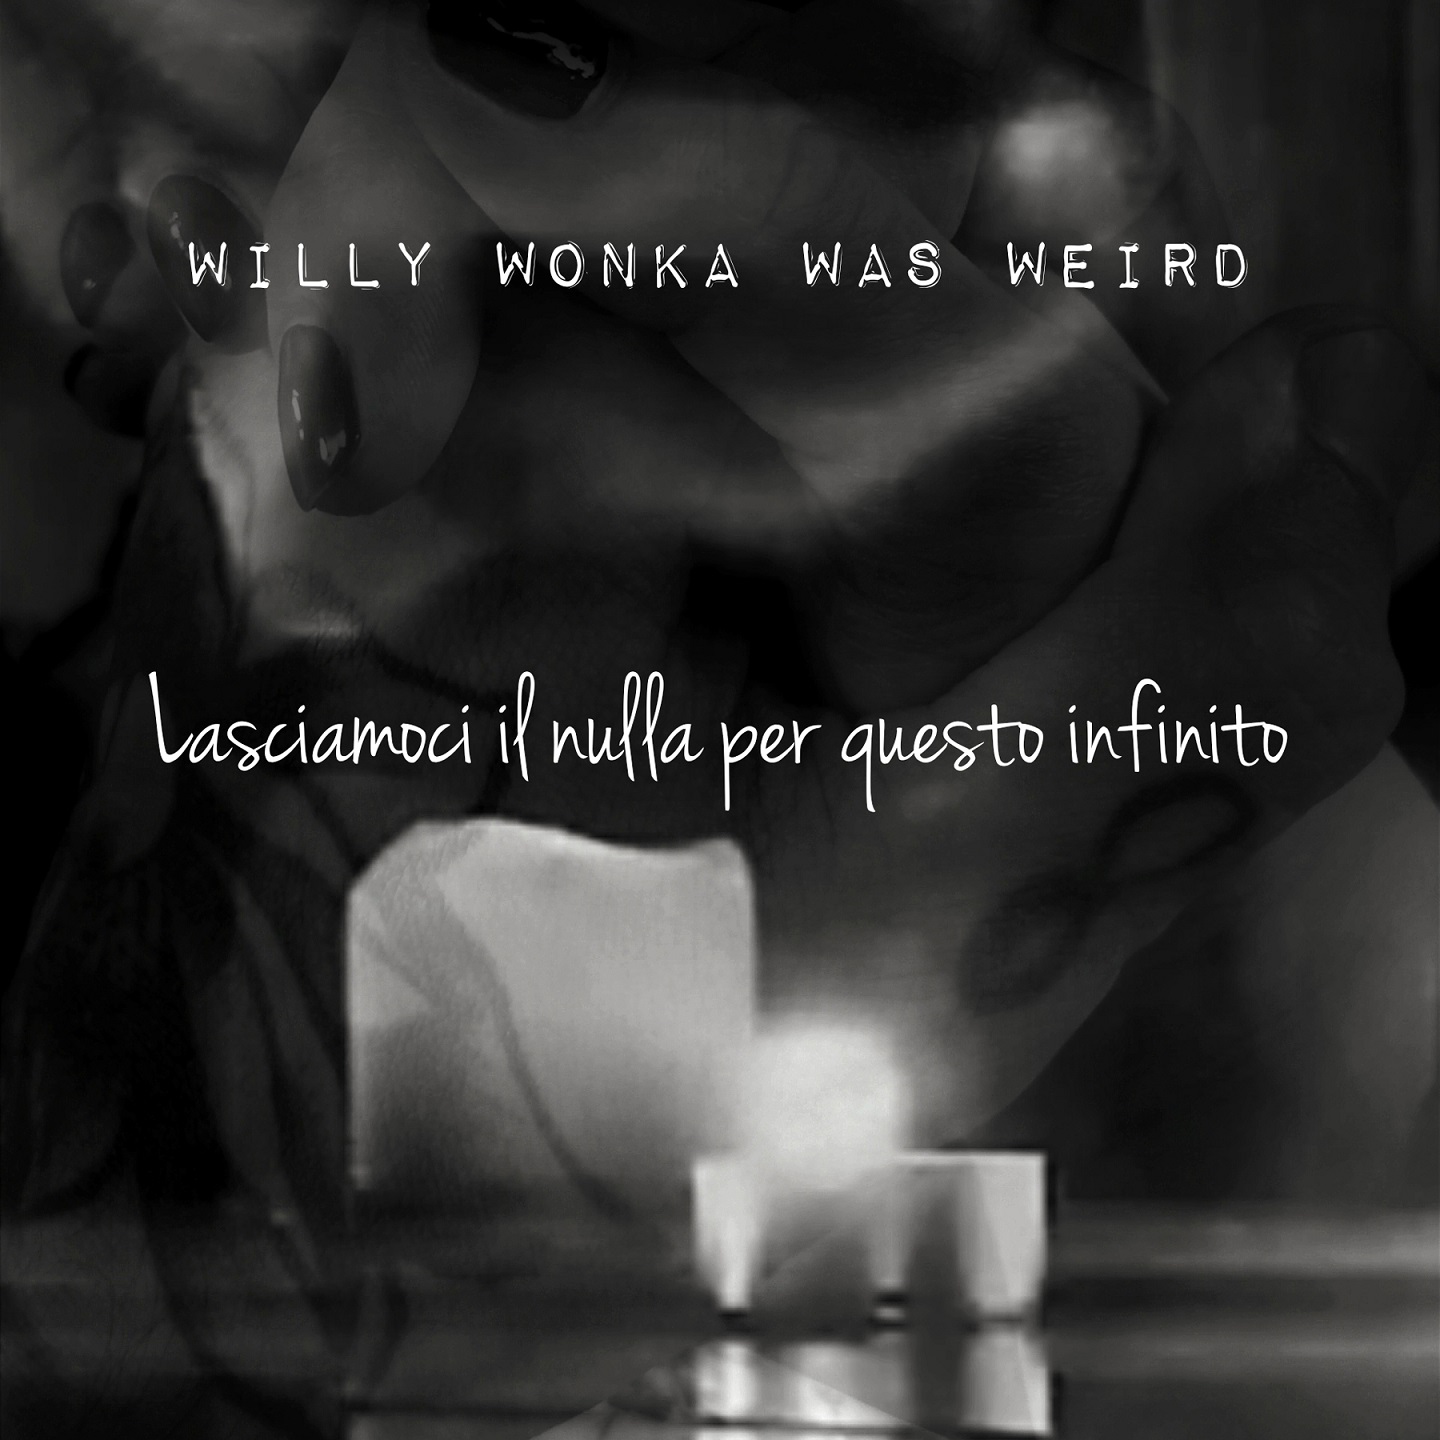 Willy Wonka Was Weird – “Lasciamoci il nulla per questo infinito”